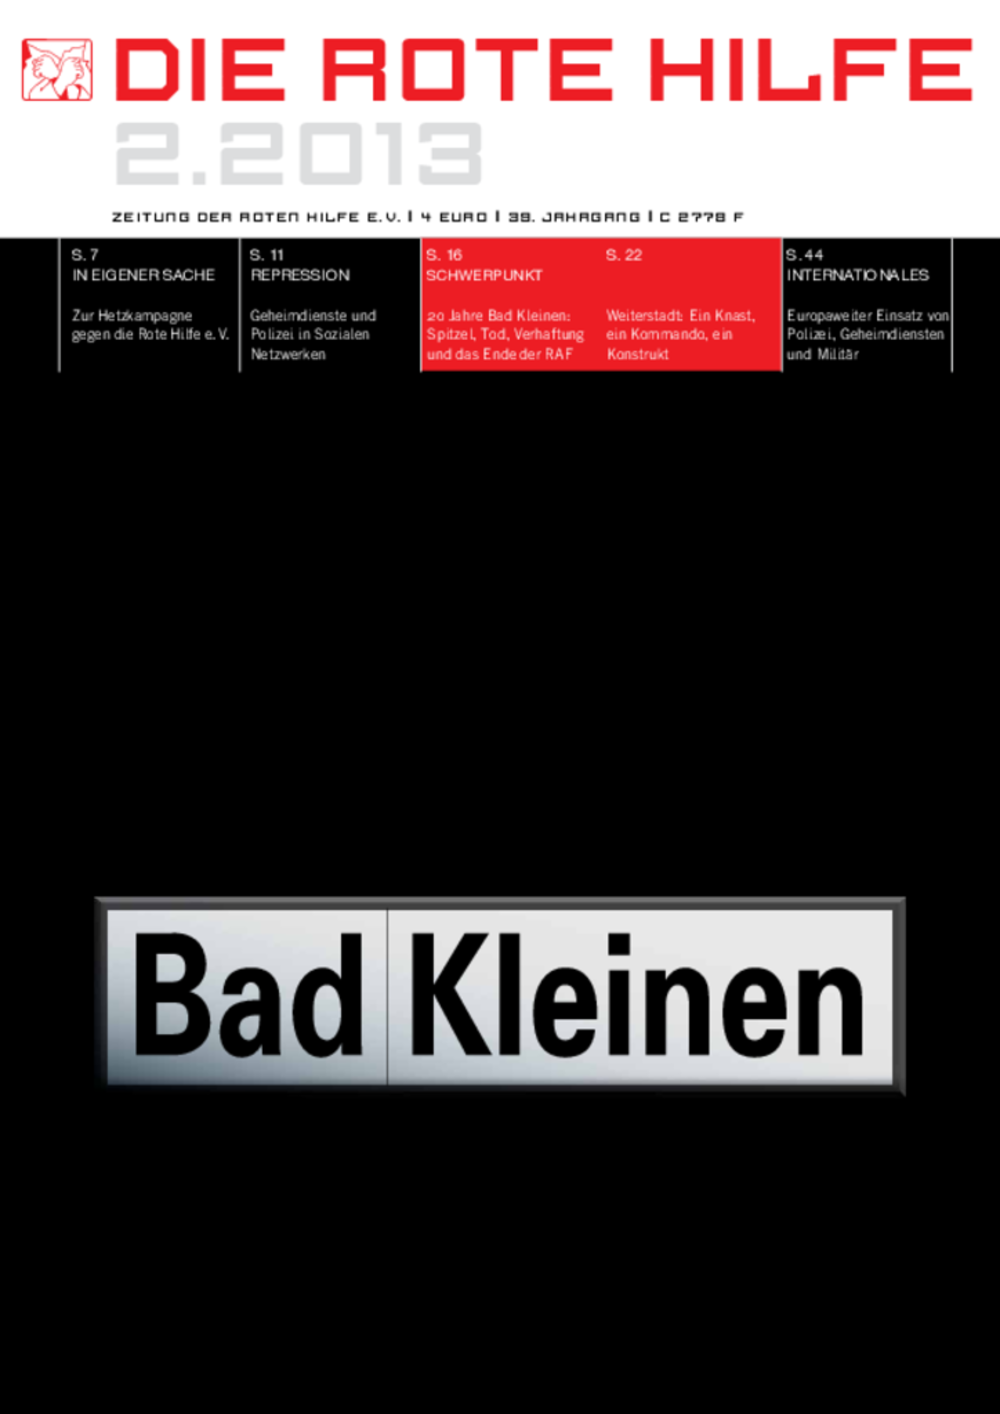 Cover von Rote Hilfe Zeitung 2/2013